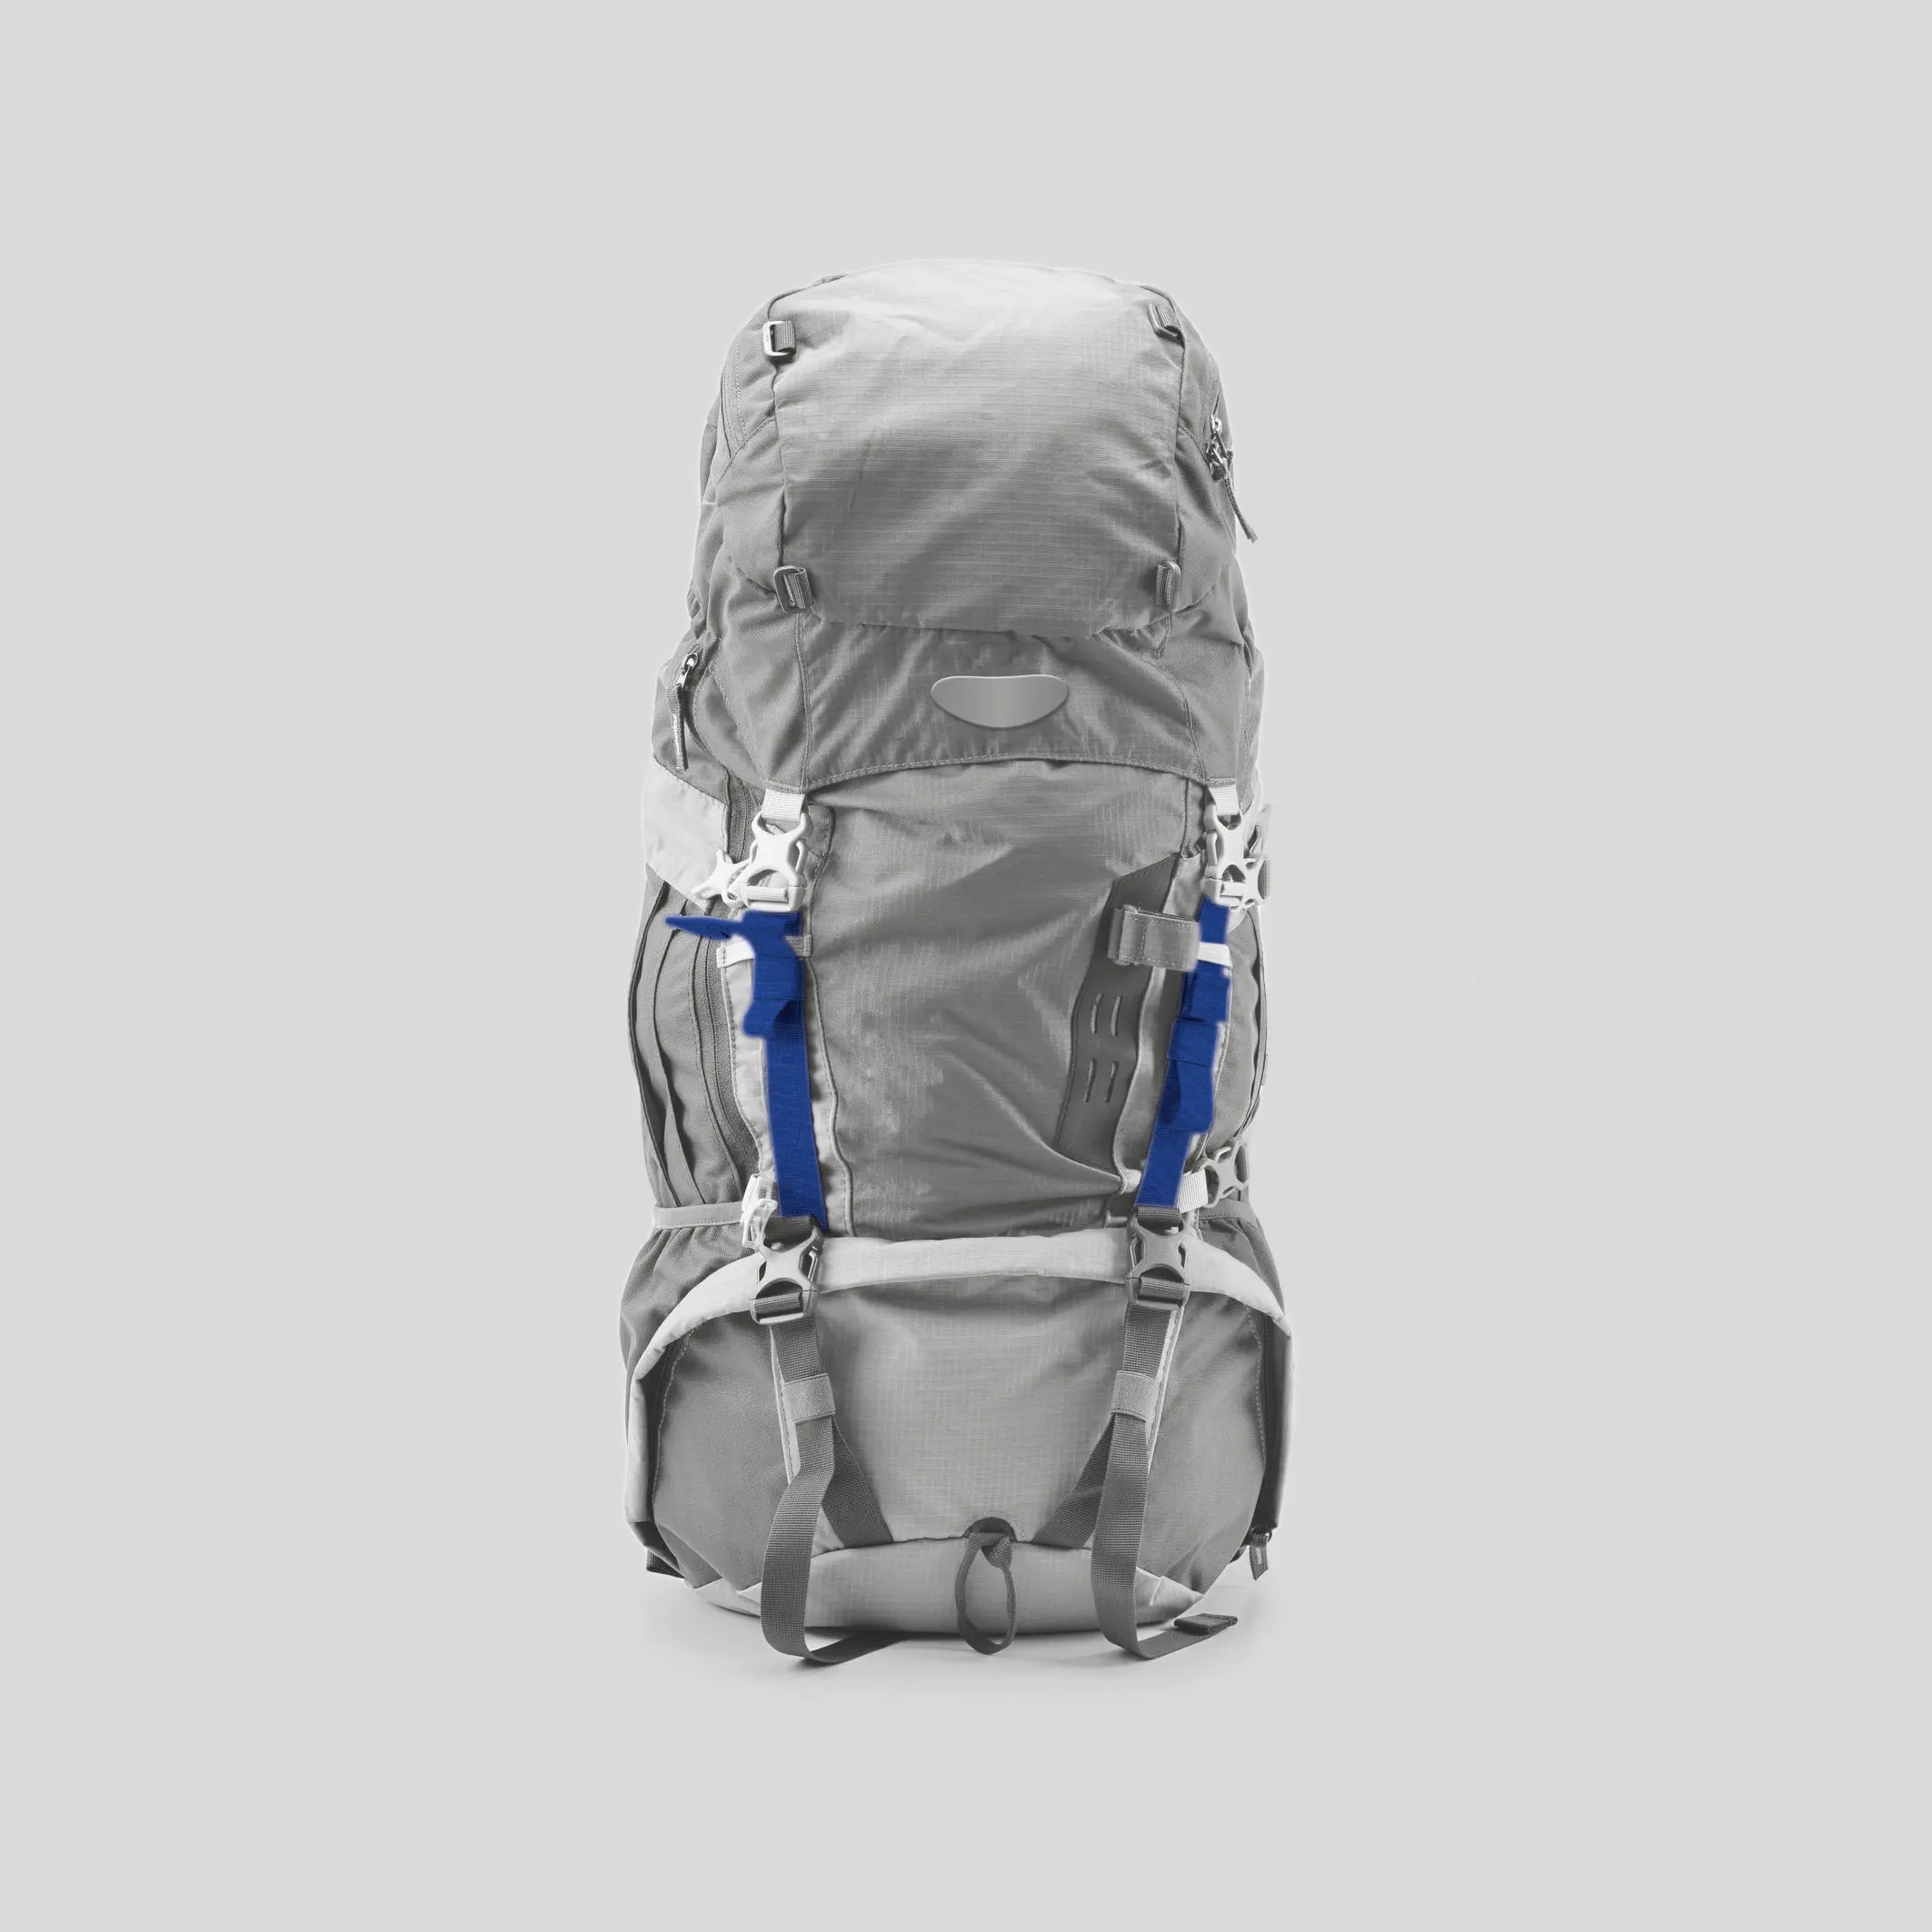 FlexiKlett auf einem Produktfoto eines grauen Outdoor-Rucksacks vor grauem Hintergrund. Manche Bänder an dem Rucksack sind in dunkelblau.